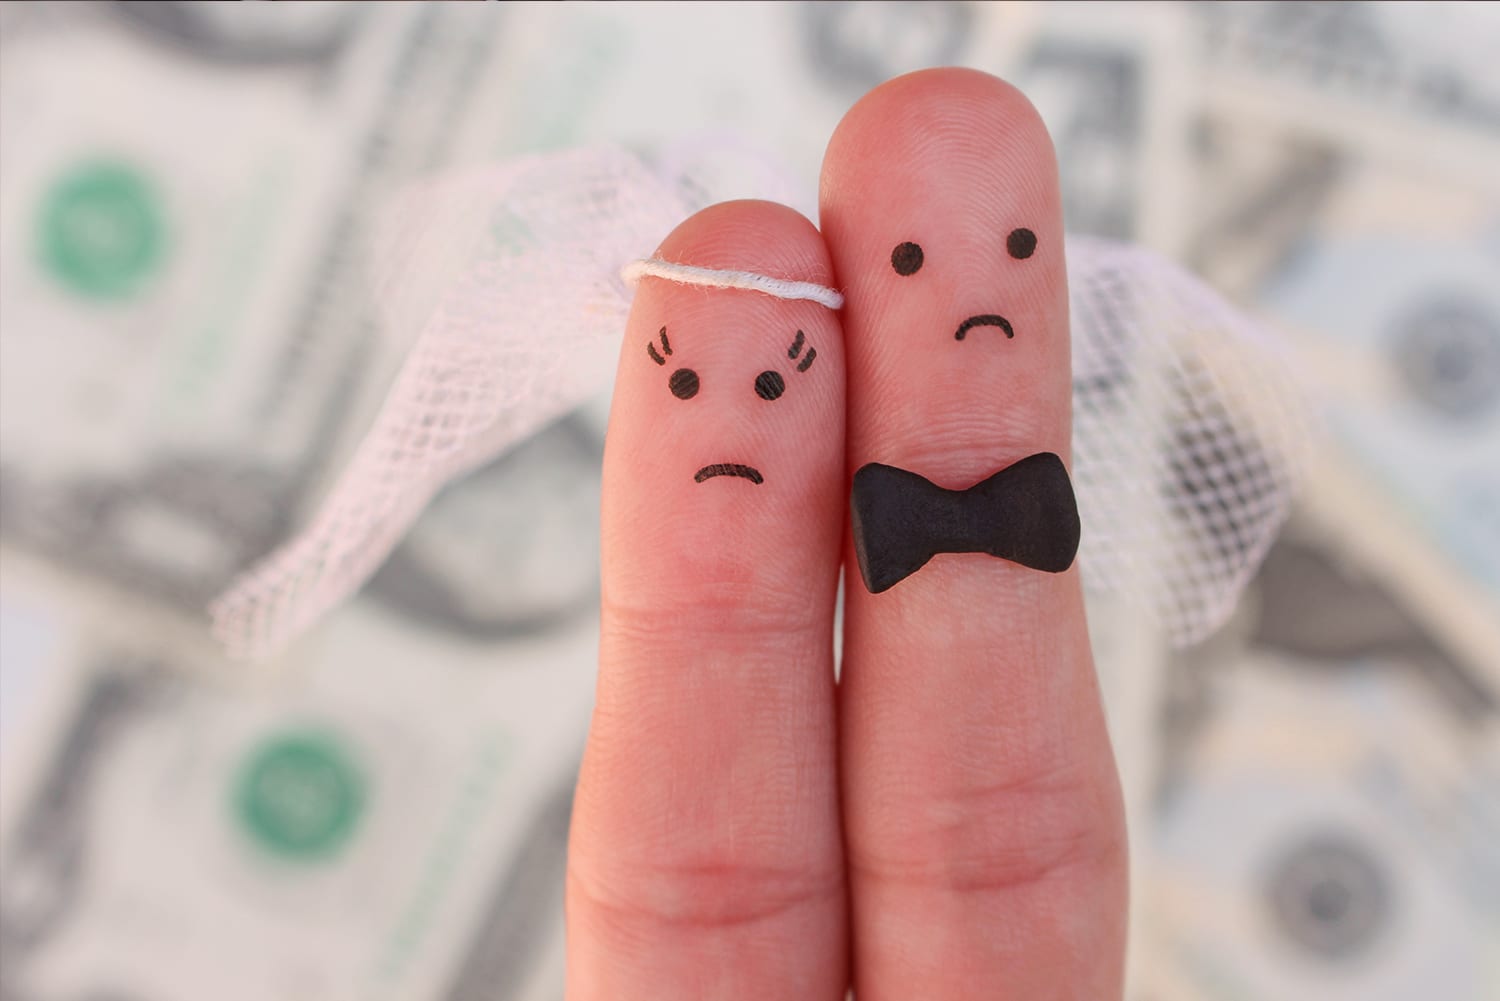 2 Finger die eine Braut und einen Bräutigam darstellen, Im Hintergrund verlorenes Geld durch einen Heiratsschwindler